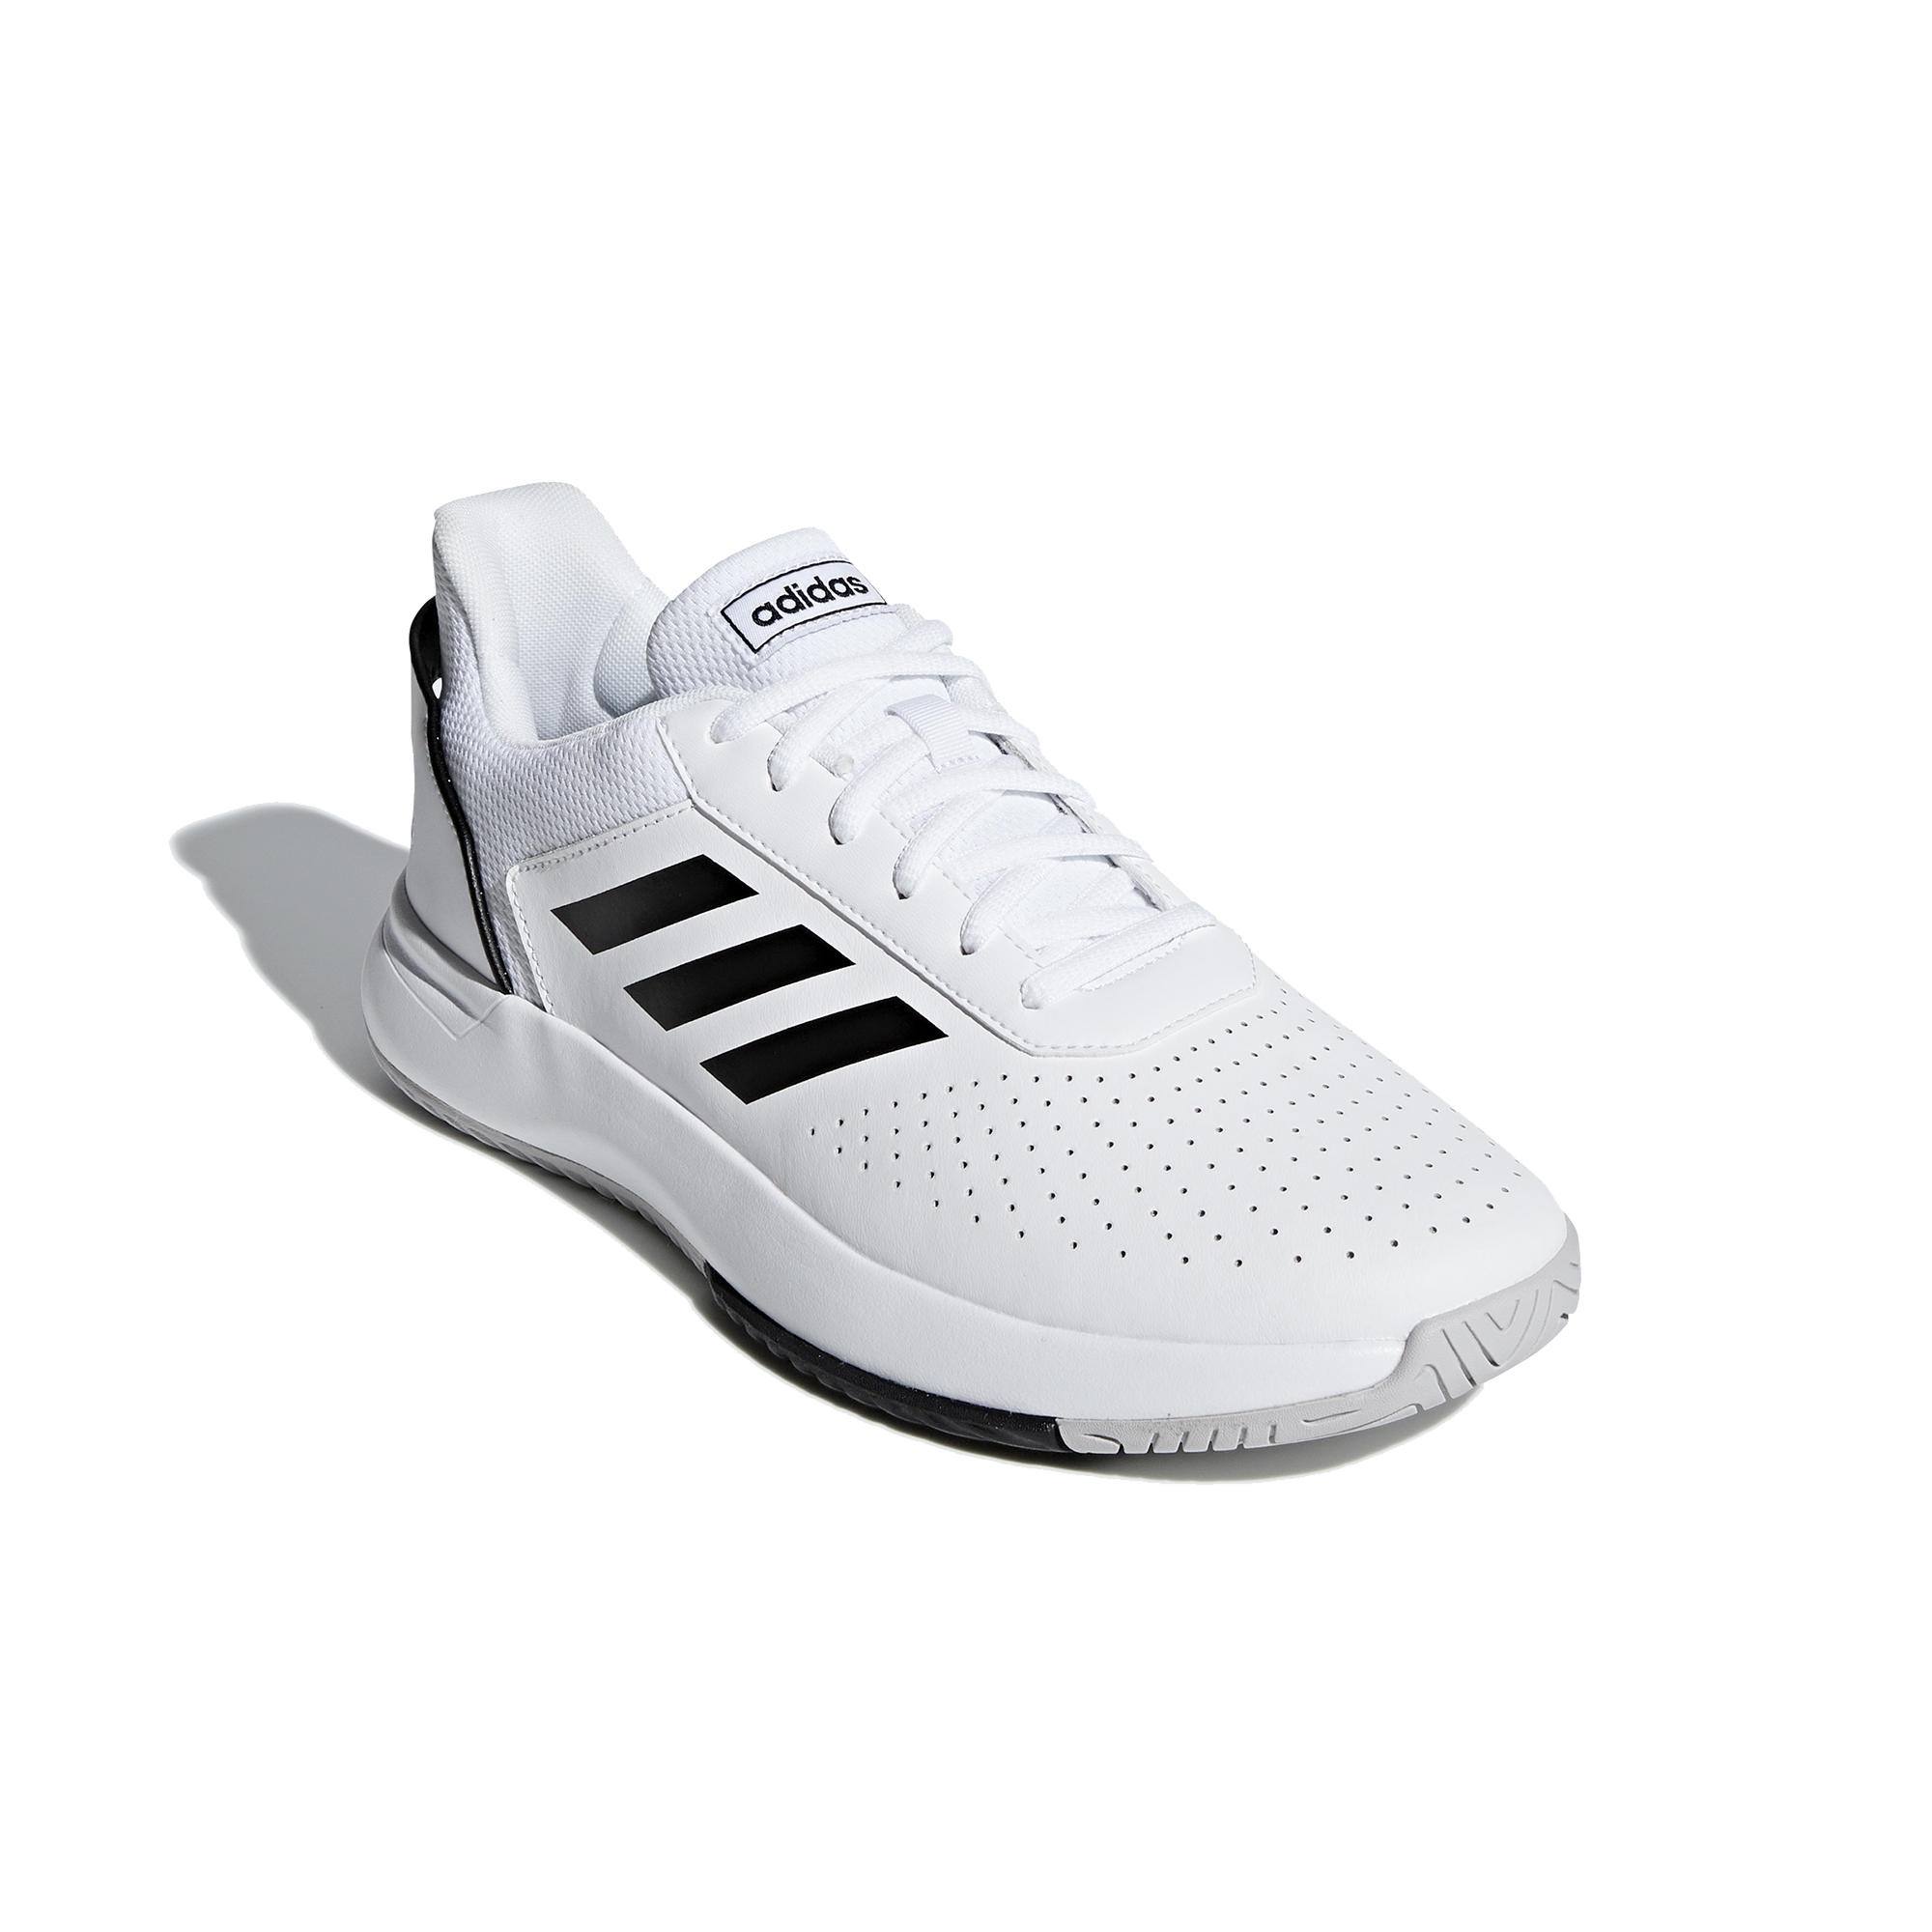 Men's Tennis Shoes Courtsmash - White 1/9